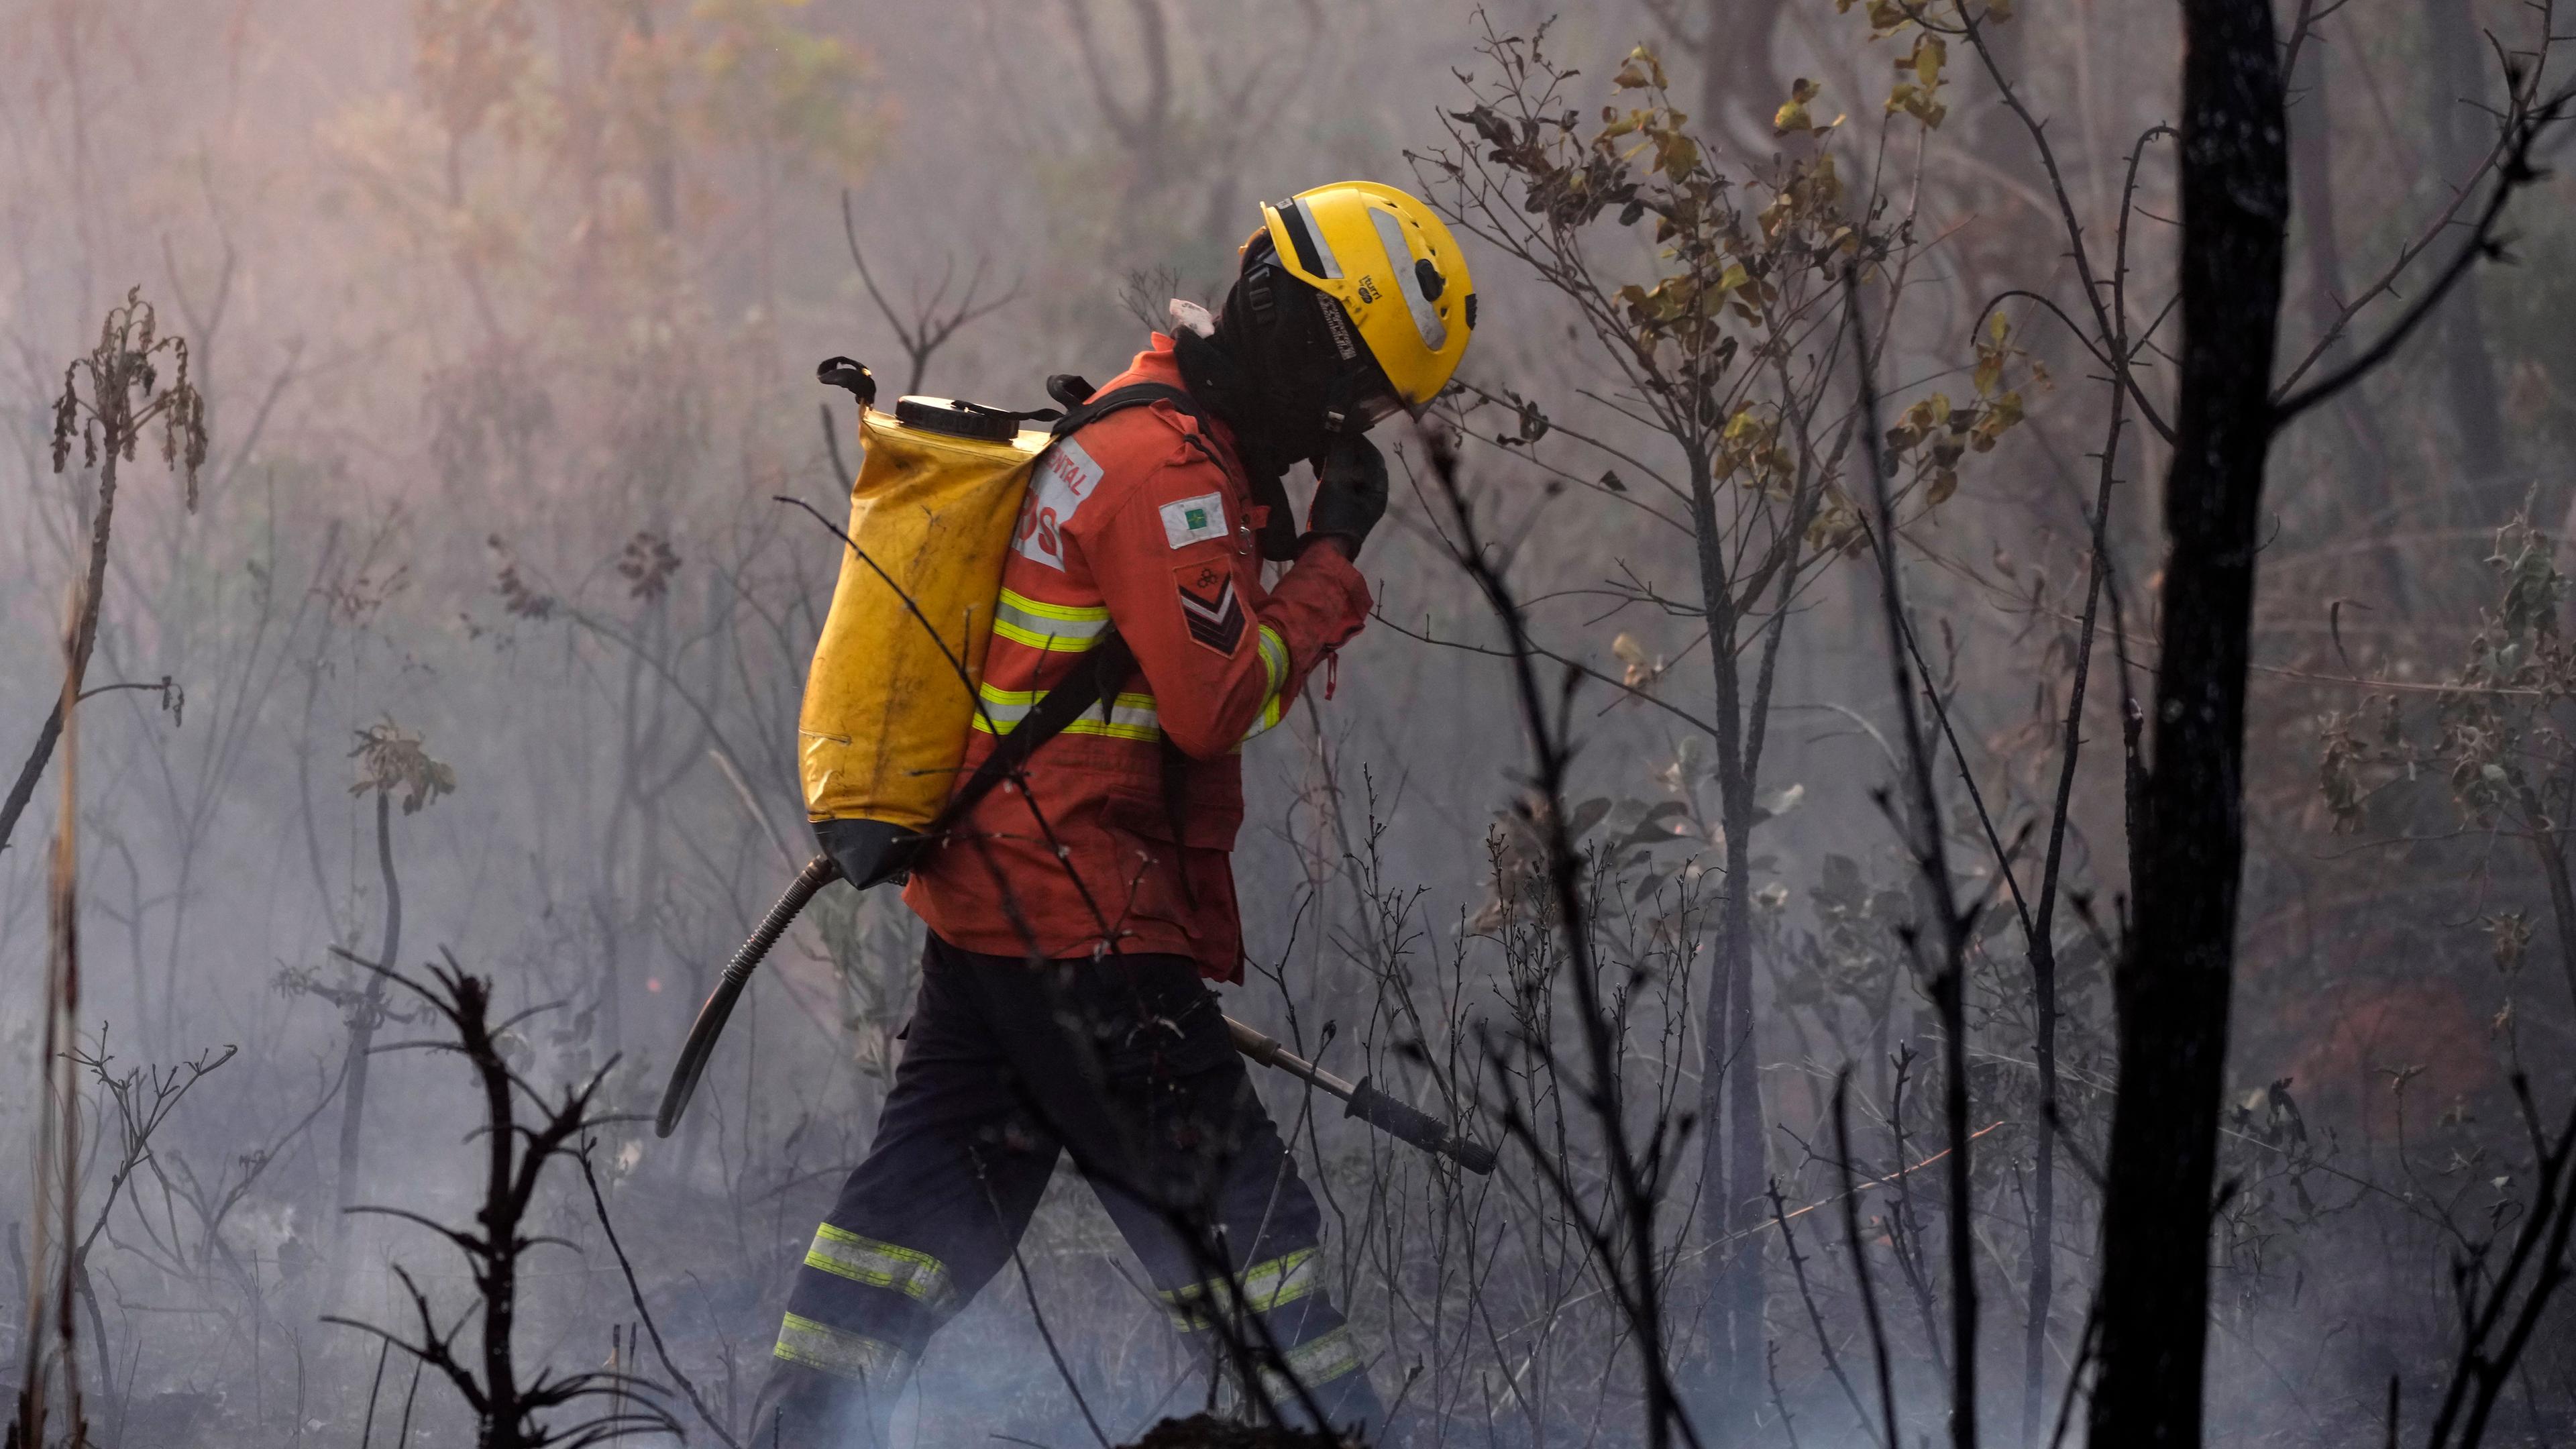 Brasilien, Ökologische Station Aguas Emendadas: Ein Feuerwehrmann geht durch ein von einem Waldbrand verkohltes Gebiet in der ökologischen Station Aguas Emendadas nordöstlich von Brasilia.